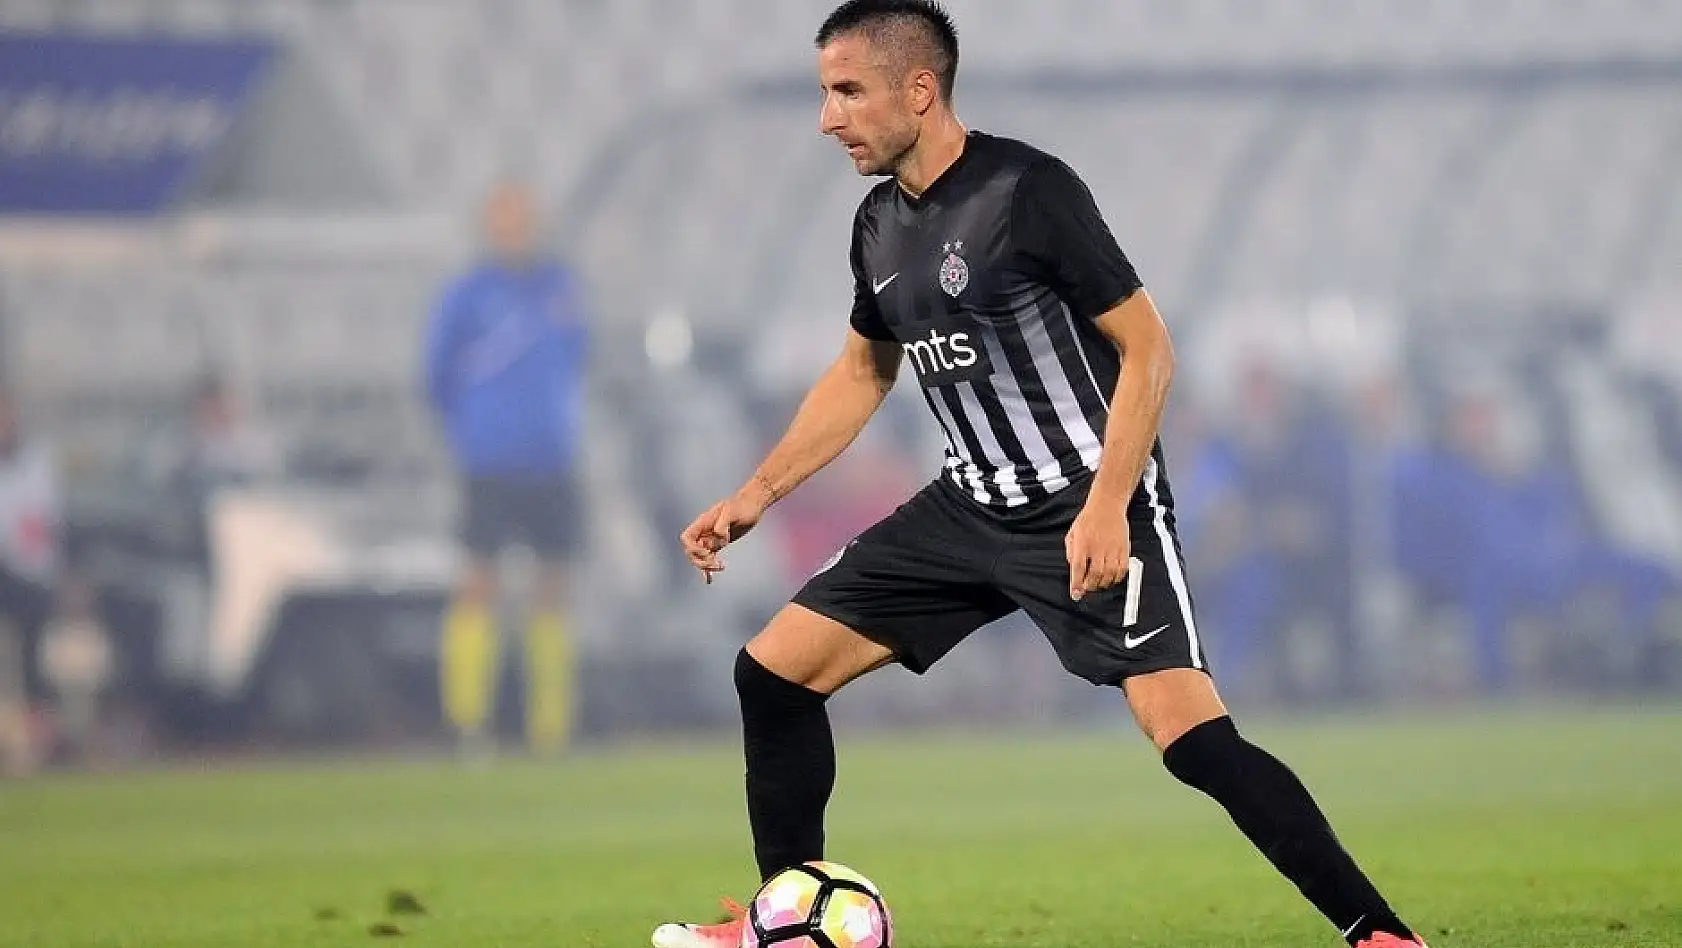 Yeni Malatyaspor, Manchaster United'ın eski oyuncusu Zoran Tosic ile anlaşmaya vardı 